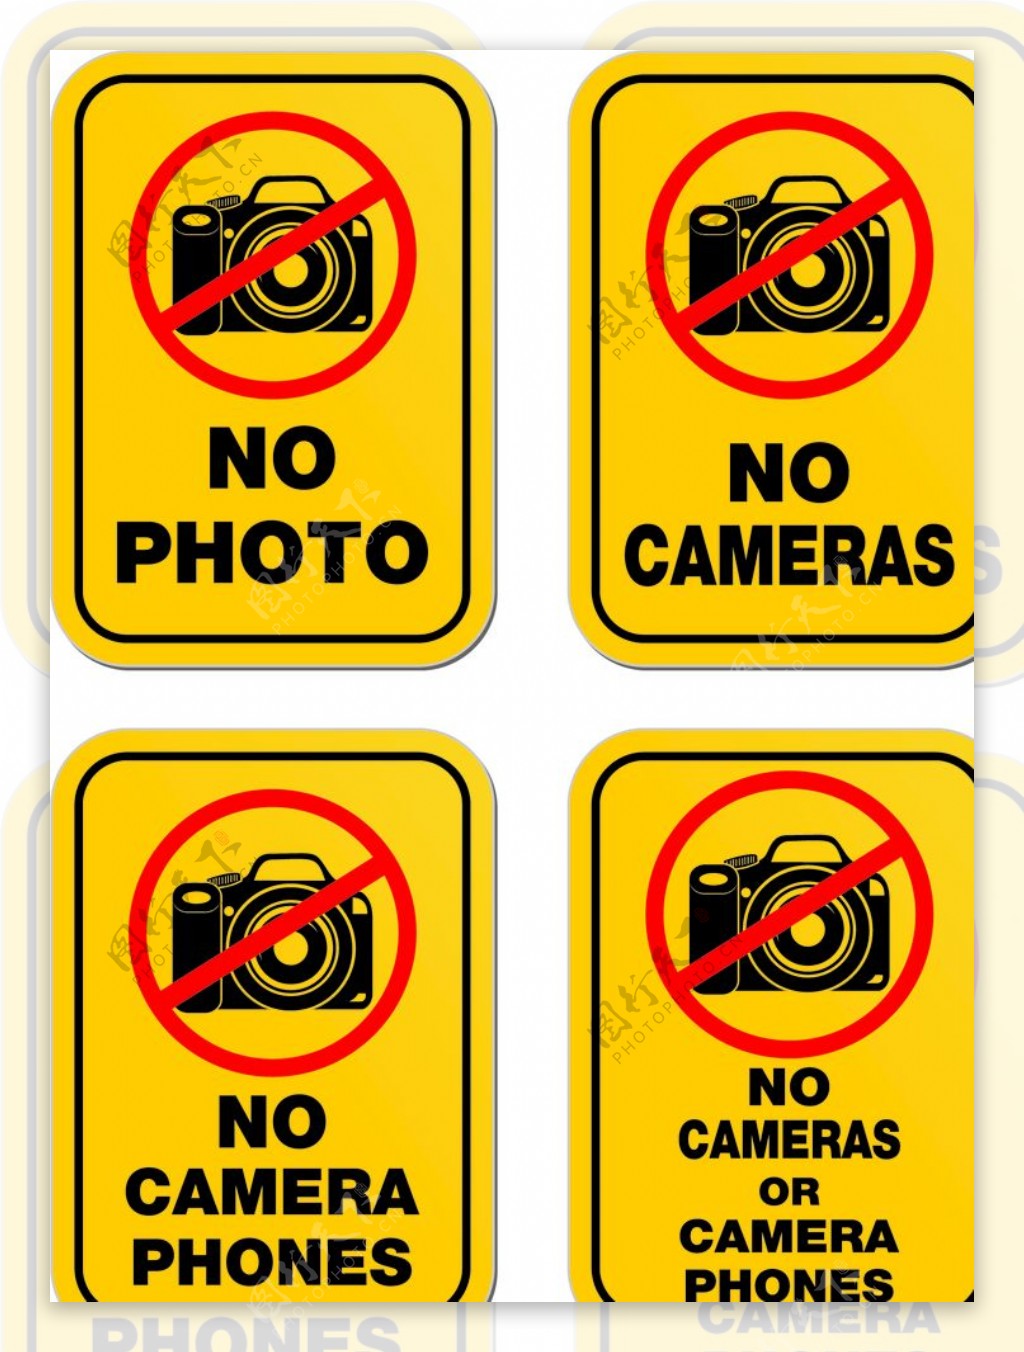 禁止拍照警示牌